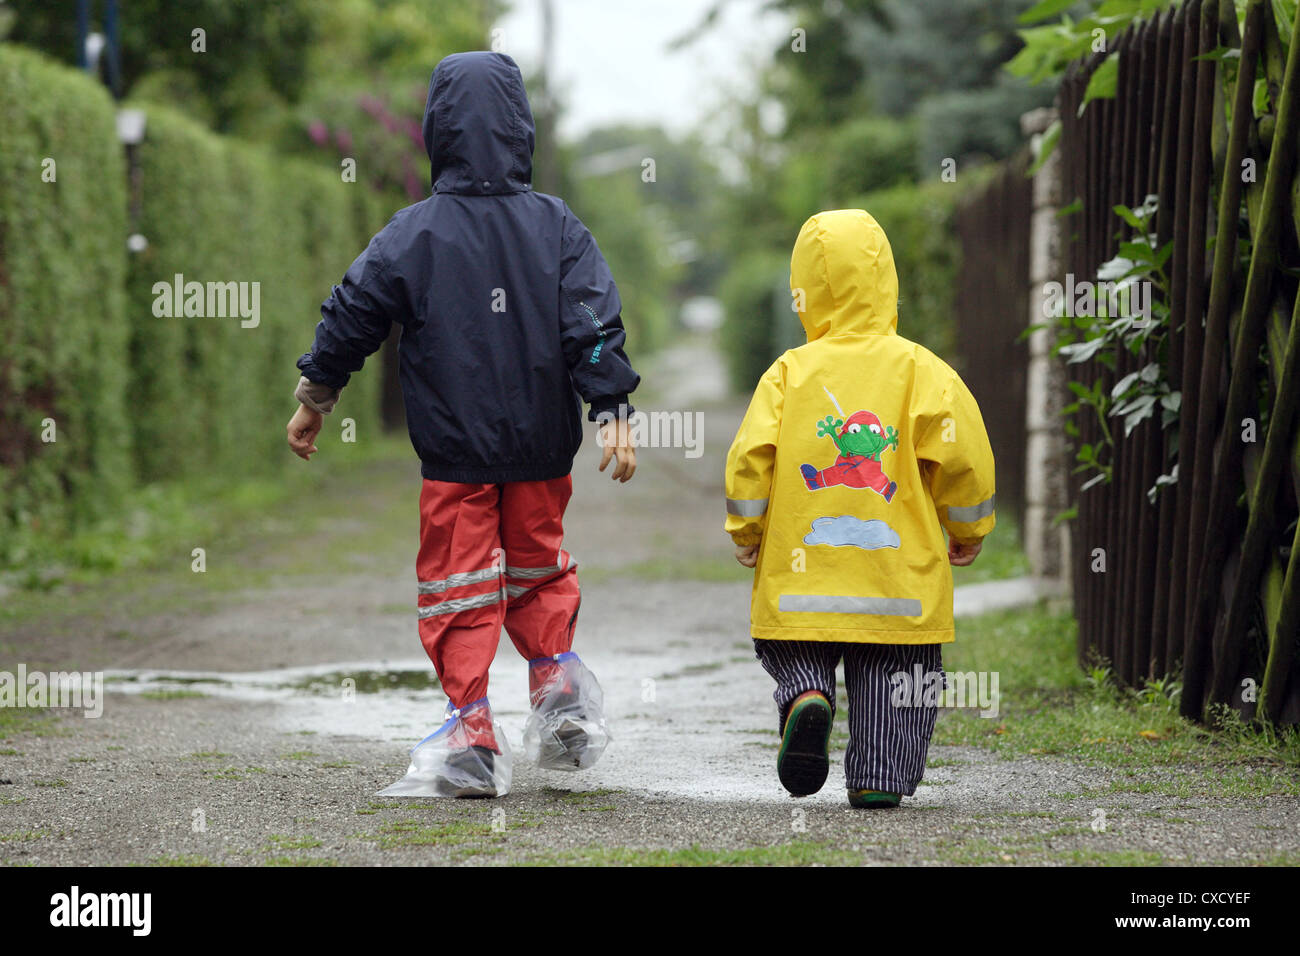 Berlin children in raincoats walk along a path Stock Photo